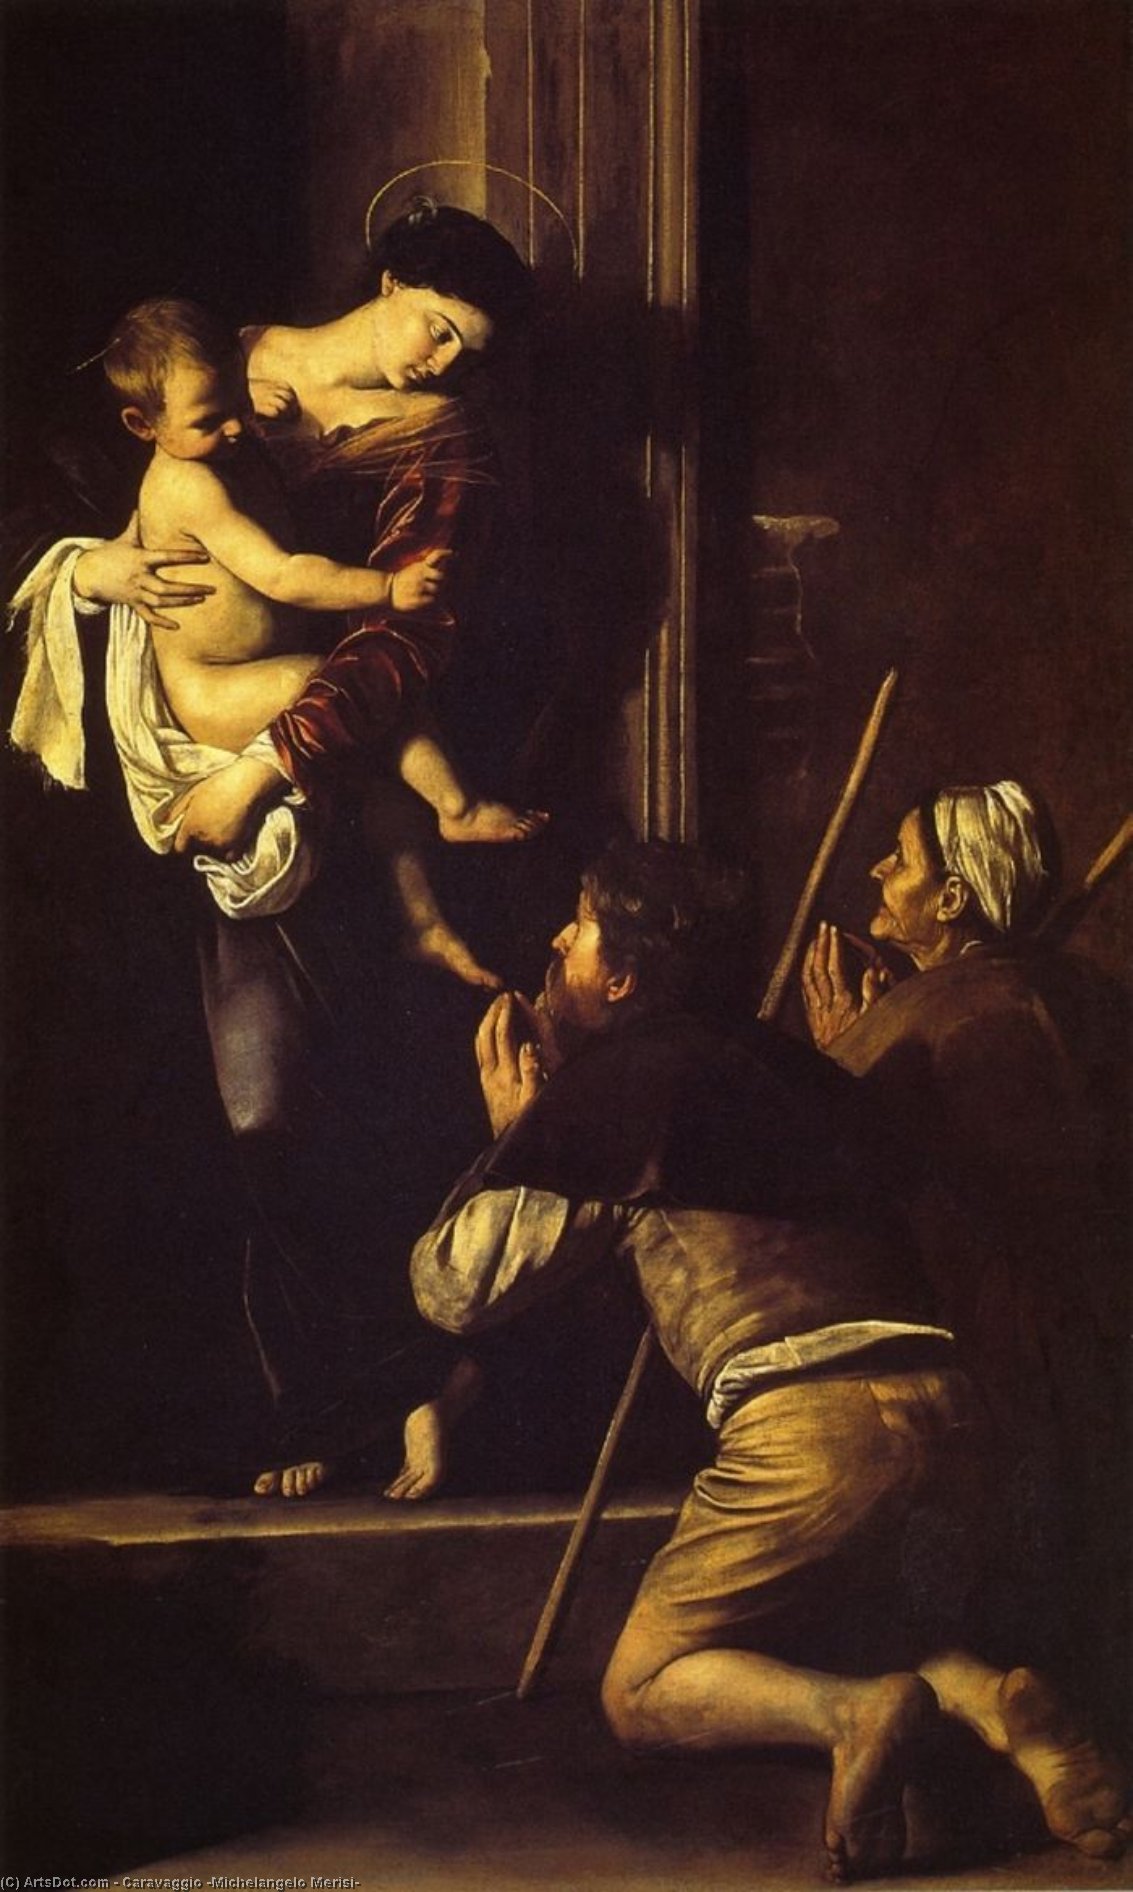 WikiOO.org - Encyclopedia of Fine Arts - Maleri, Artwork Caravaggio (Michelangelo Merisi) - Madona di Loreto